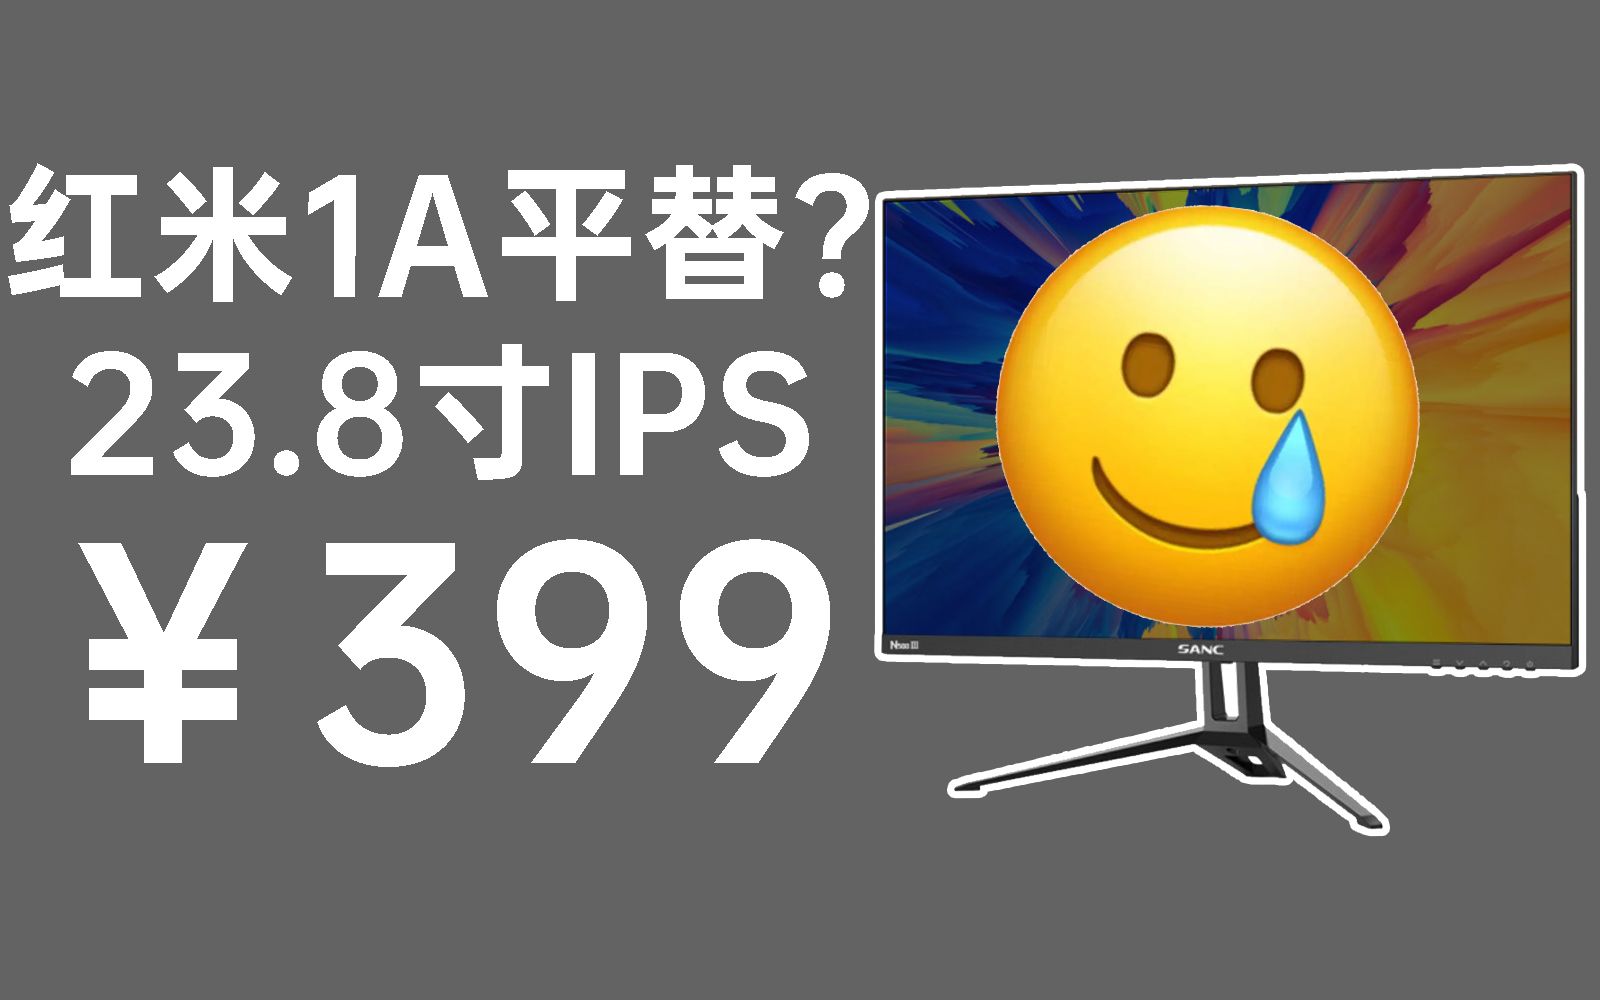 比二手屏还便宜，399但是IPS。SANC N500三代评测报告【宿舍神屏计划vol.12】